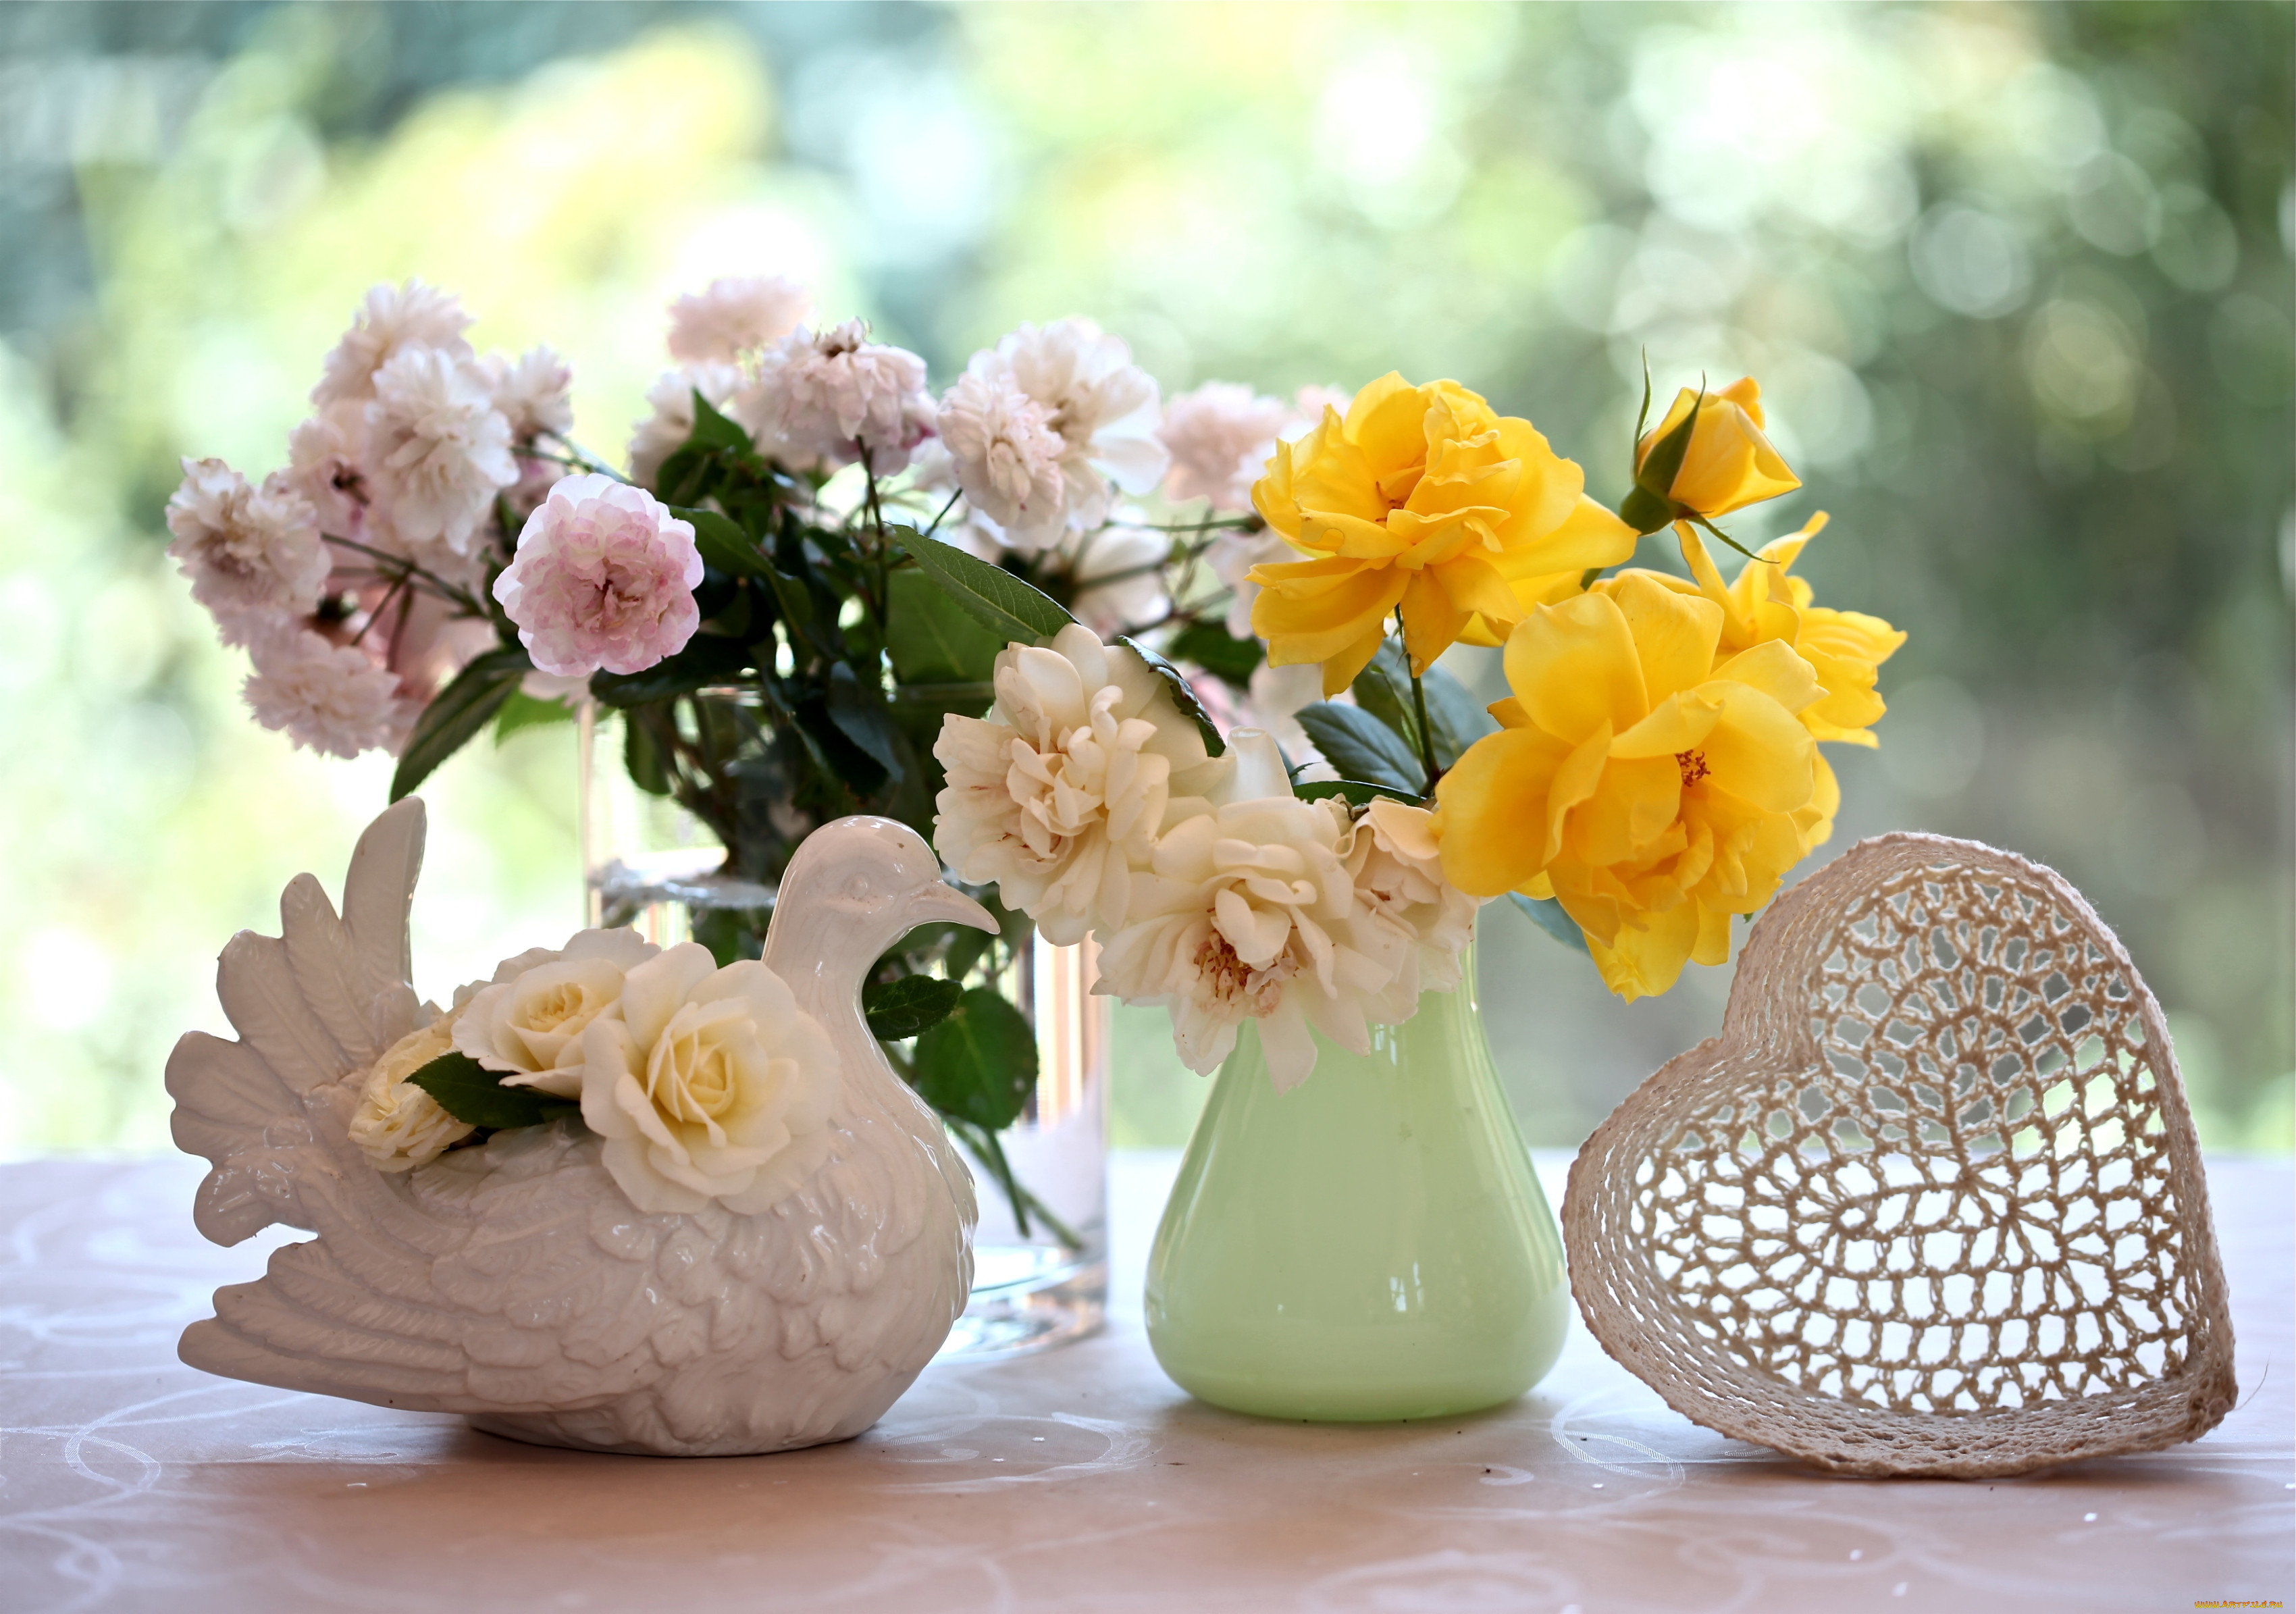 Картинка с цветами красивая хорошего дня. Цветочки в вазе. Красивые цветы в вазах. Нежная Цветочная композиция. Красивый букет в вазе.